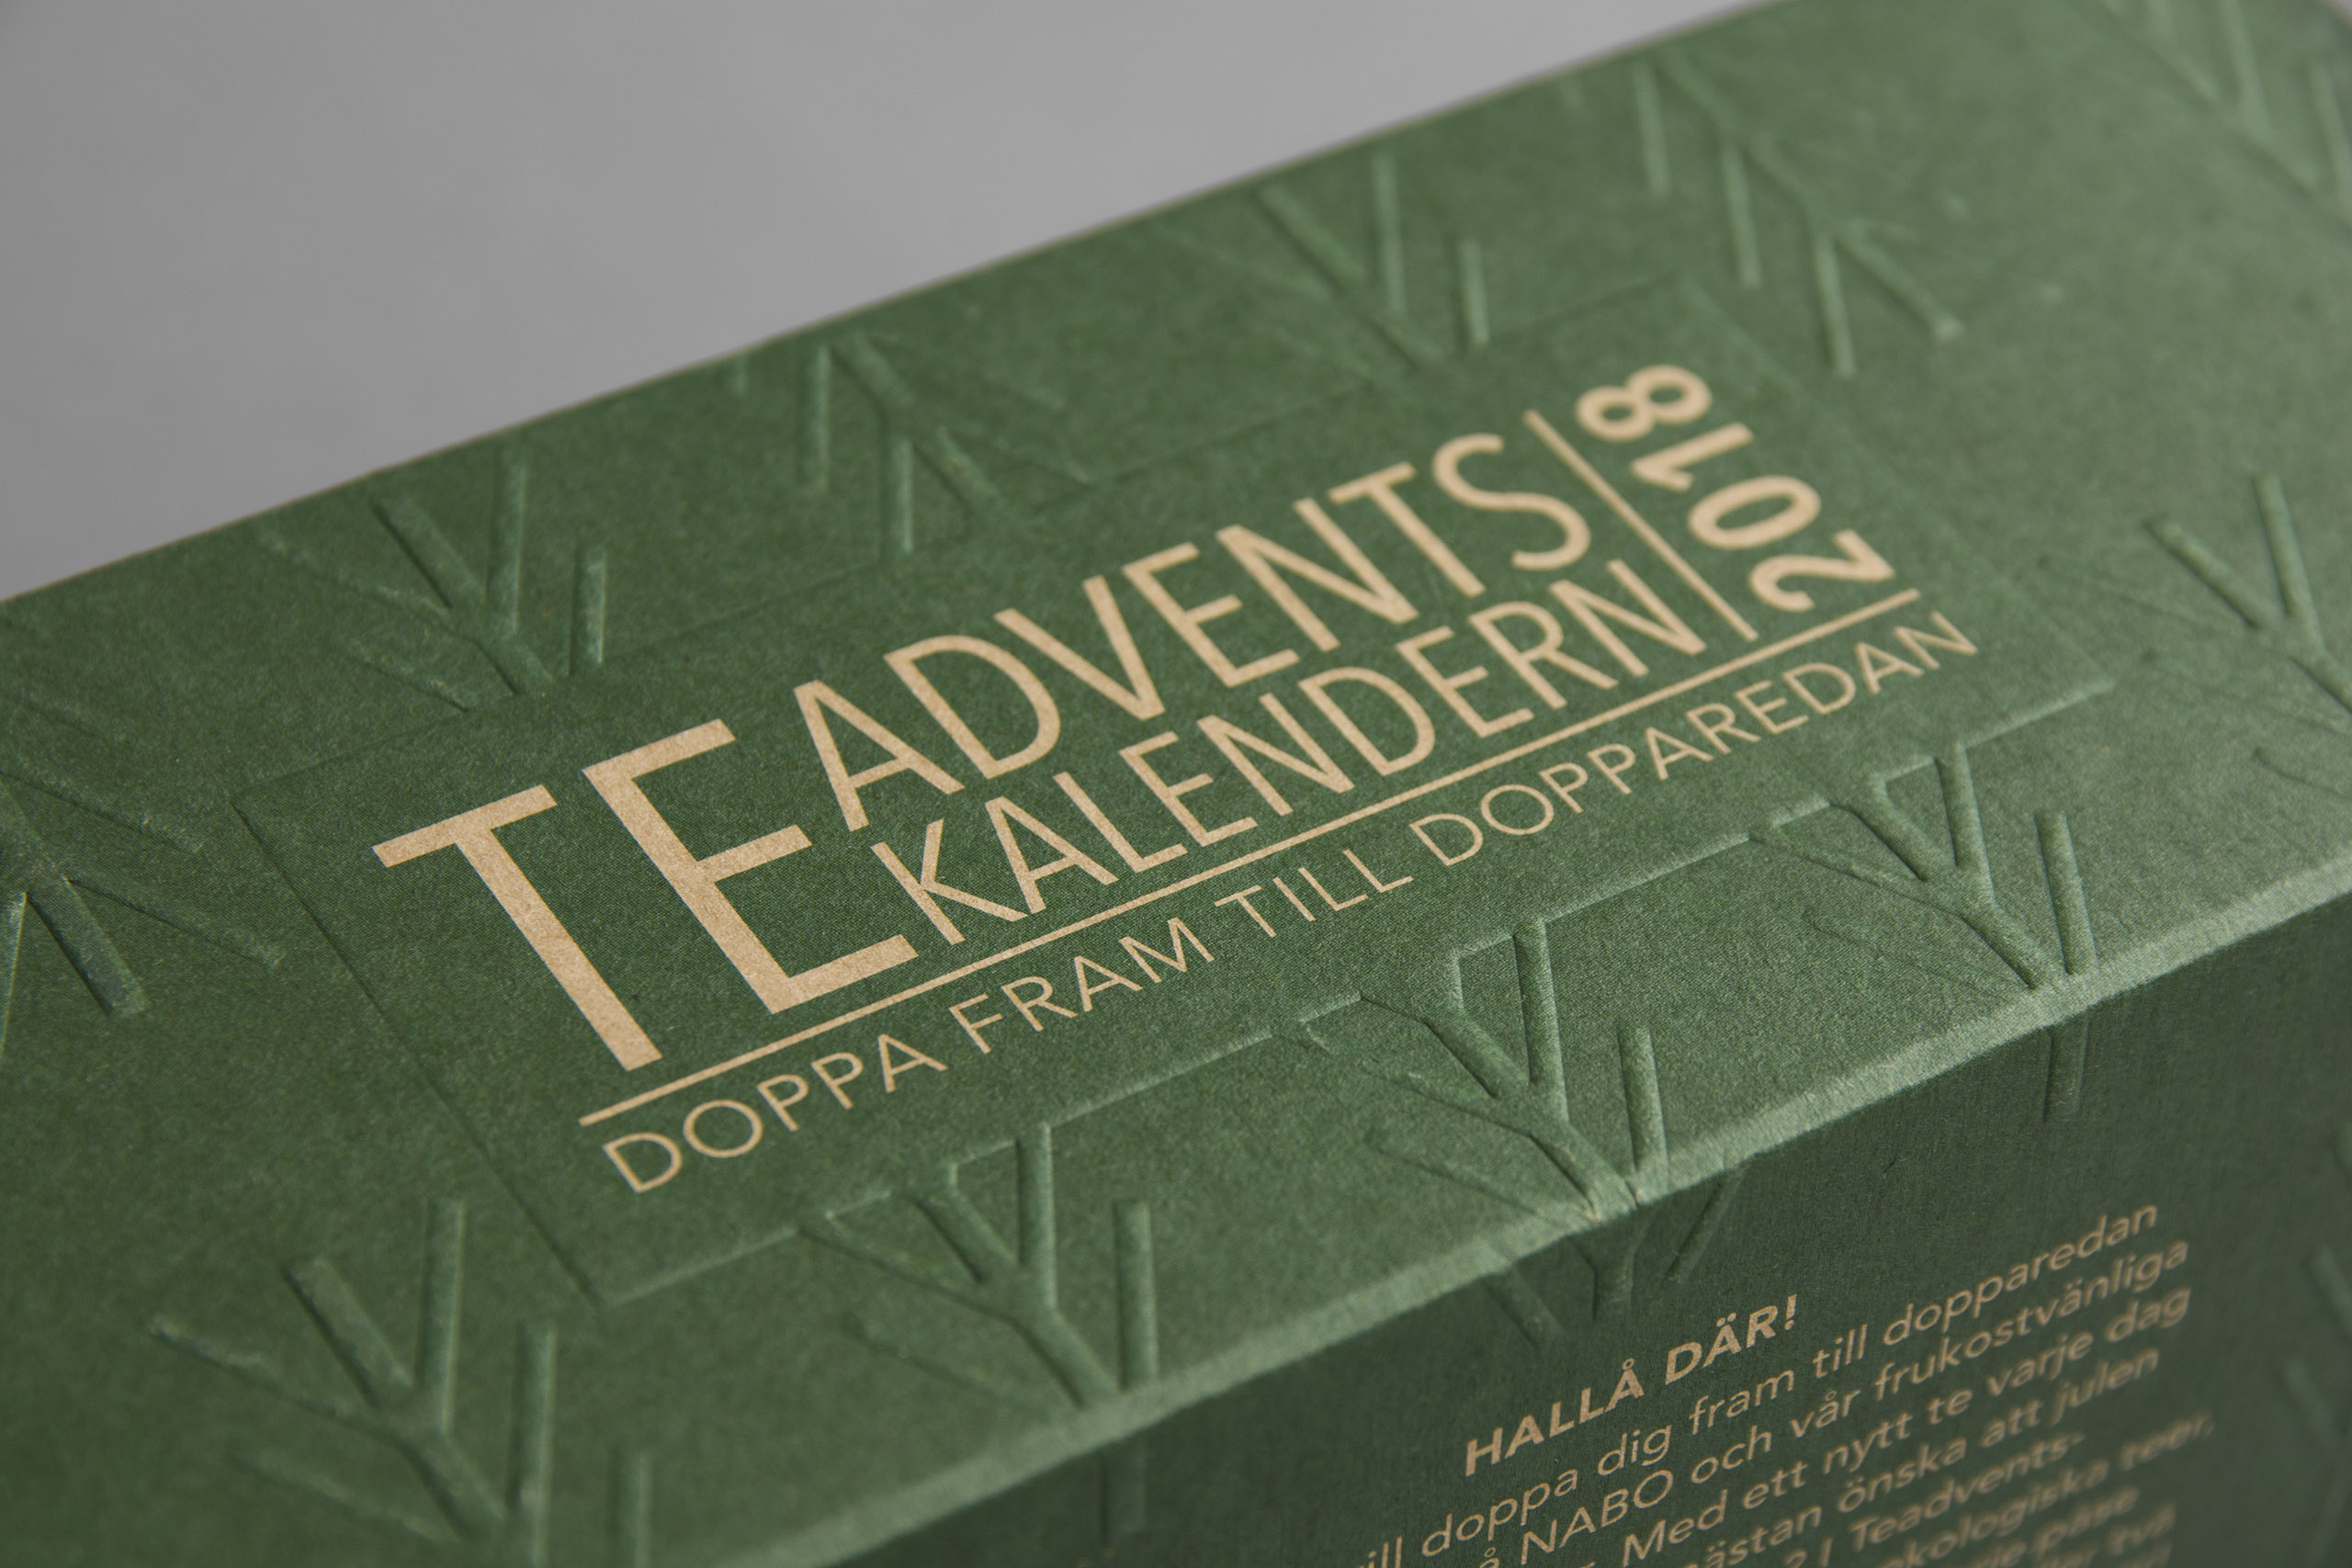 The Tea And Coffee Advent Calendar 2018